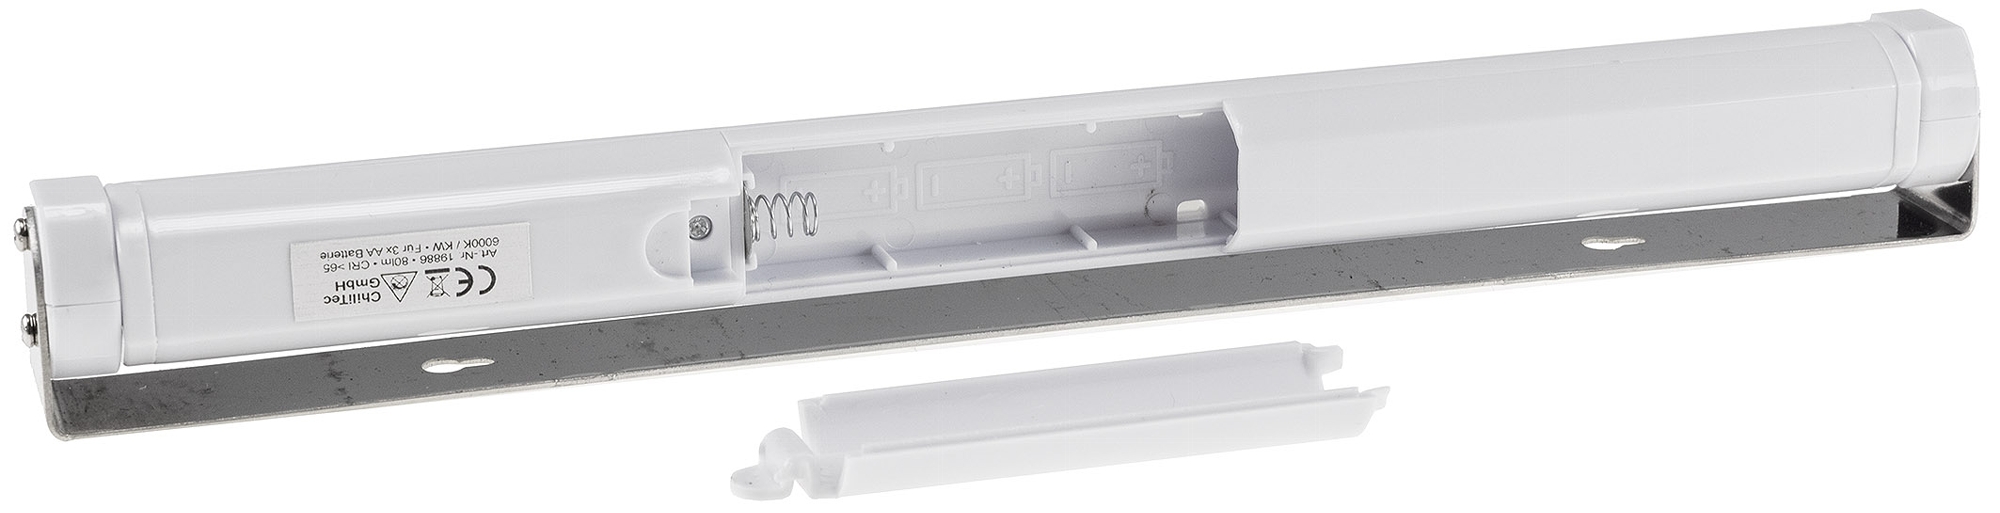 LED-Unterbauleuchte McShine, 9 LEDs, 100lm, Bewegungsmelder, Batterie,  warmweiß